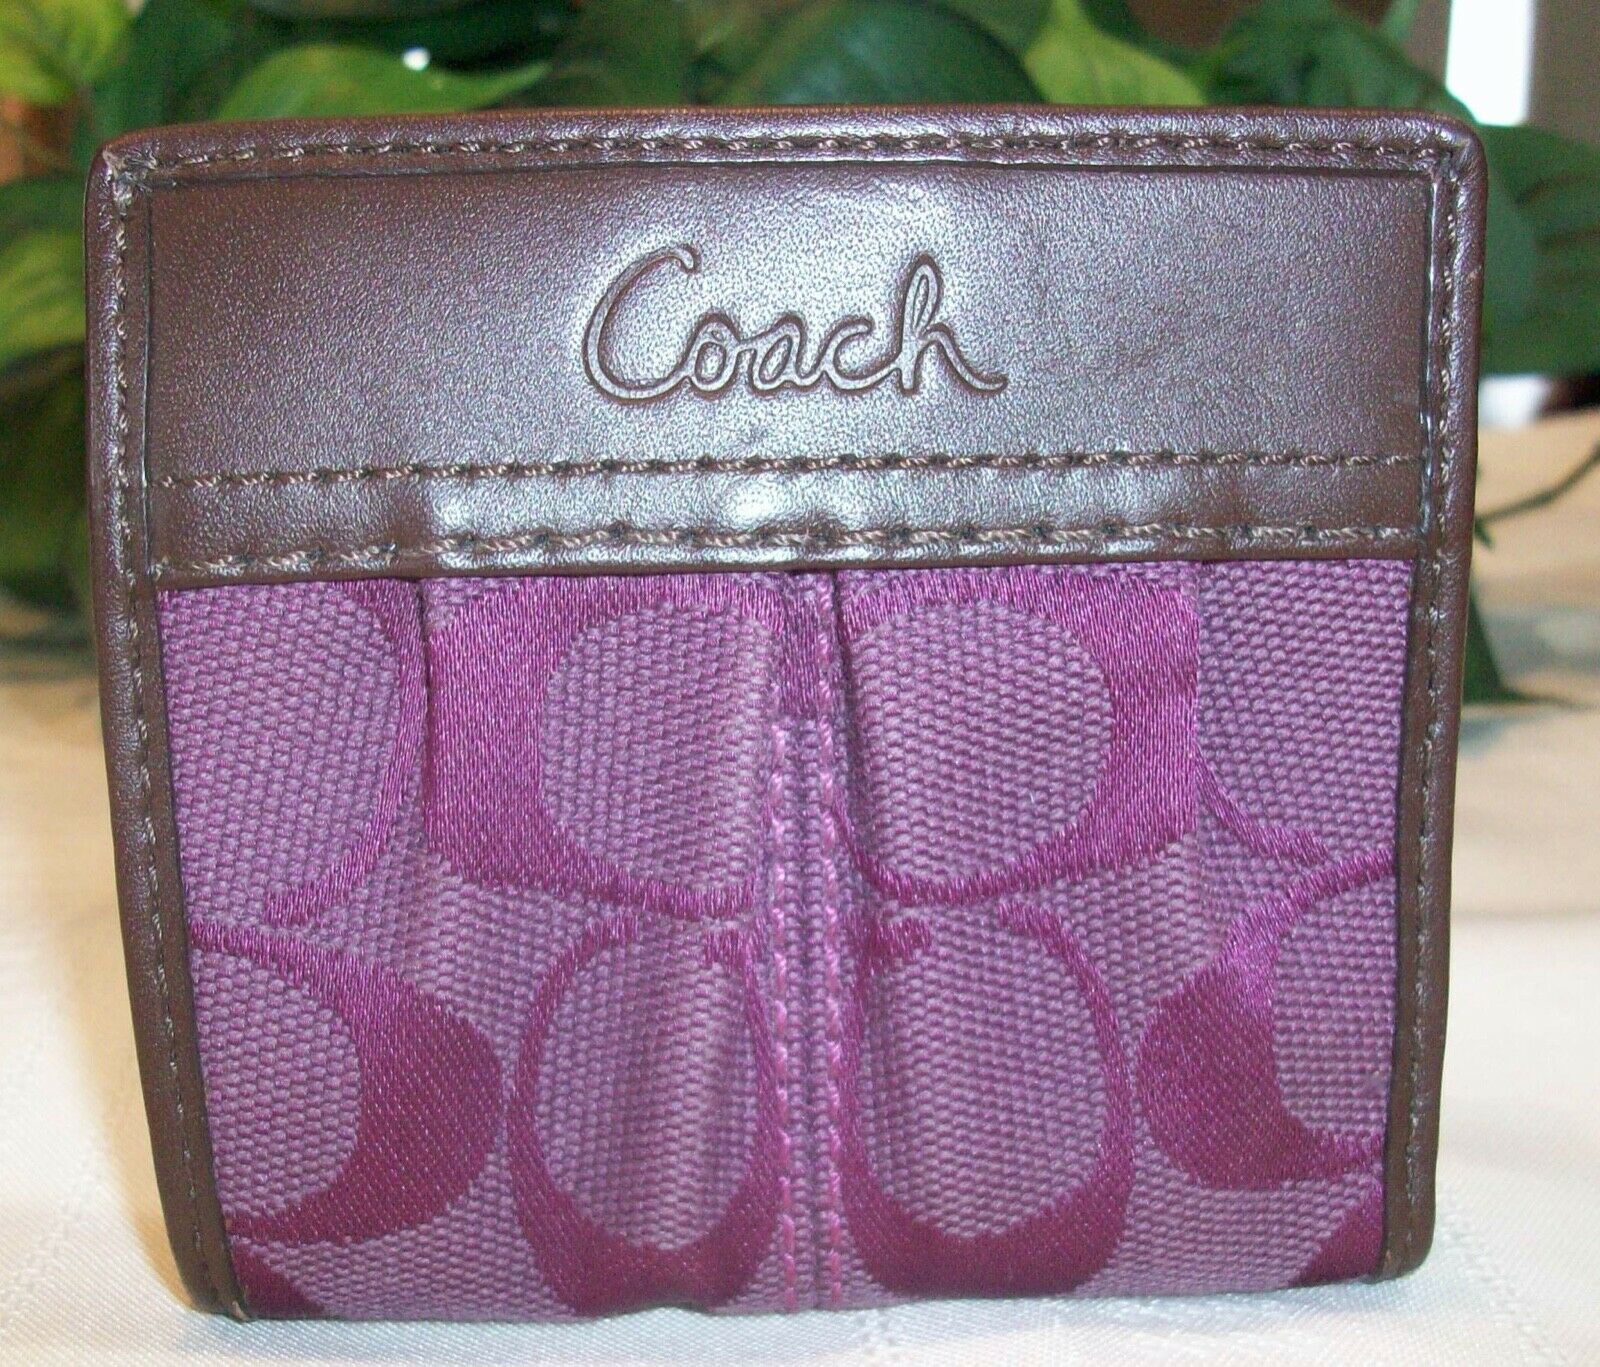 Coach Women's Pink Wallets & Card Holders on Sale